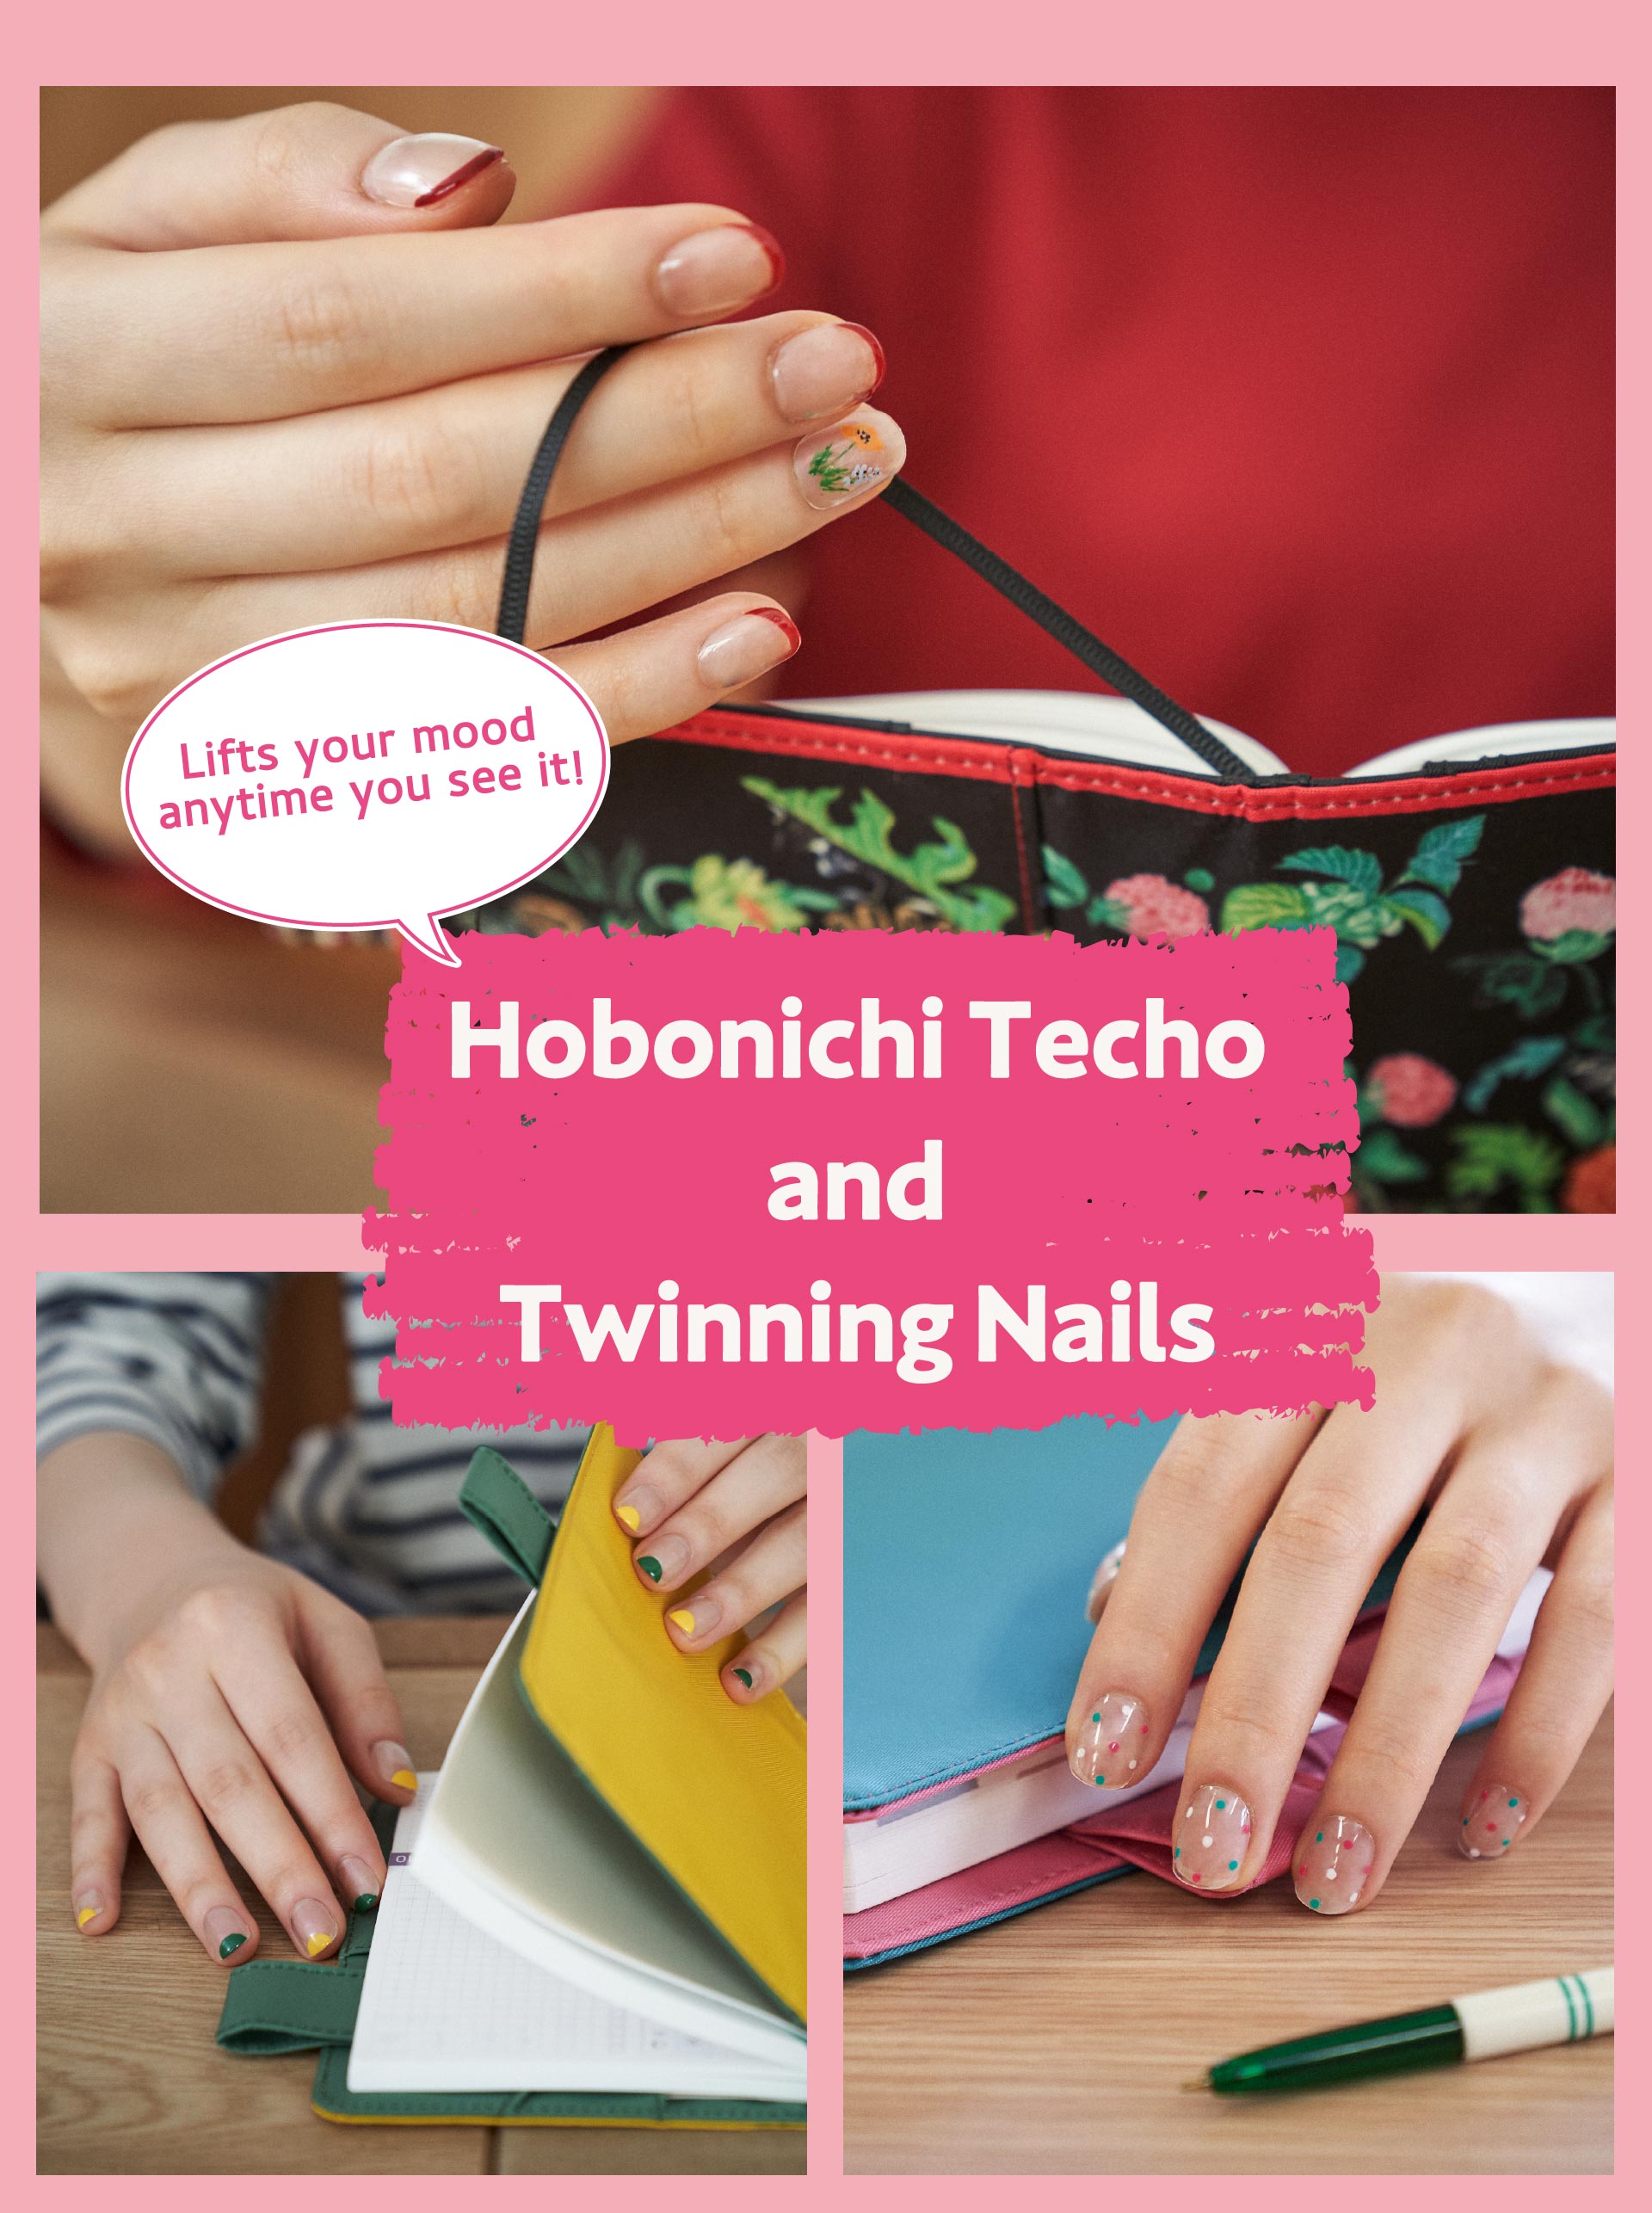 Hobonichi Techo and Twinning Nails